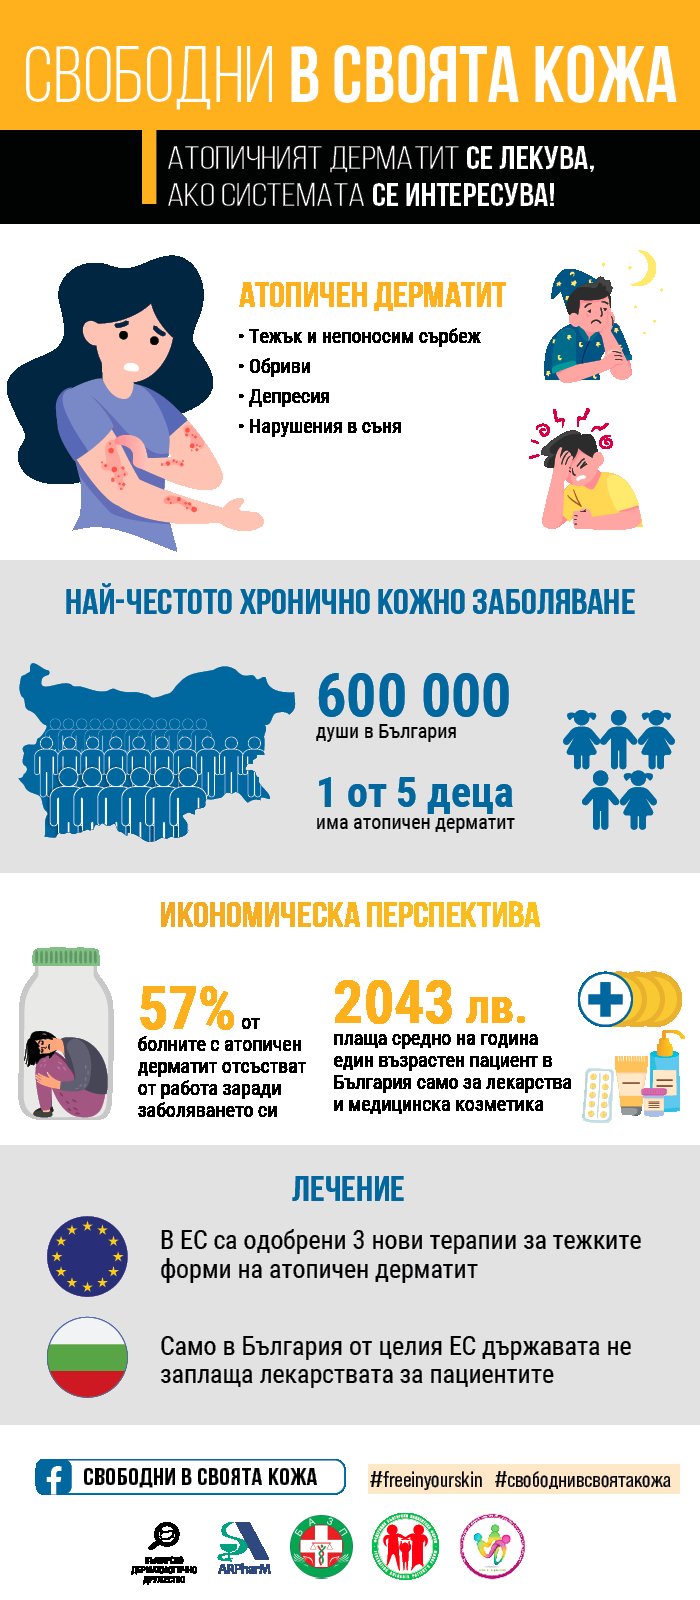 Около 200 000 възрастни в България боледуват от атопичен дерматит.